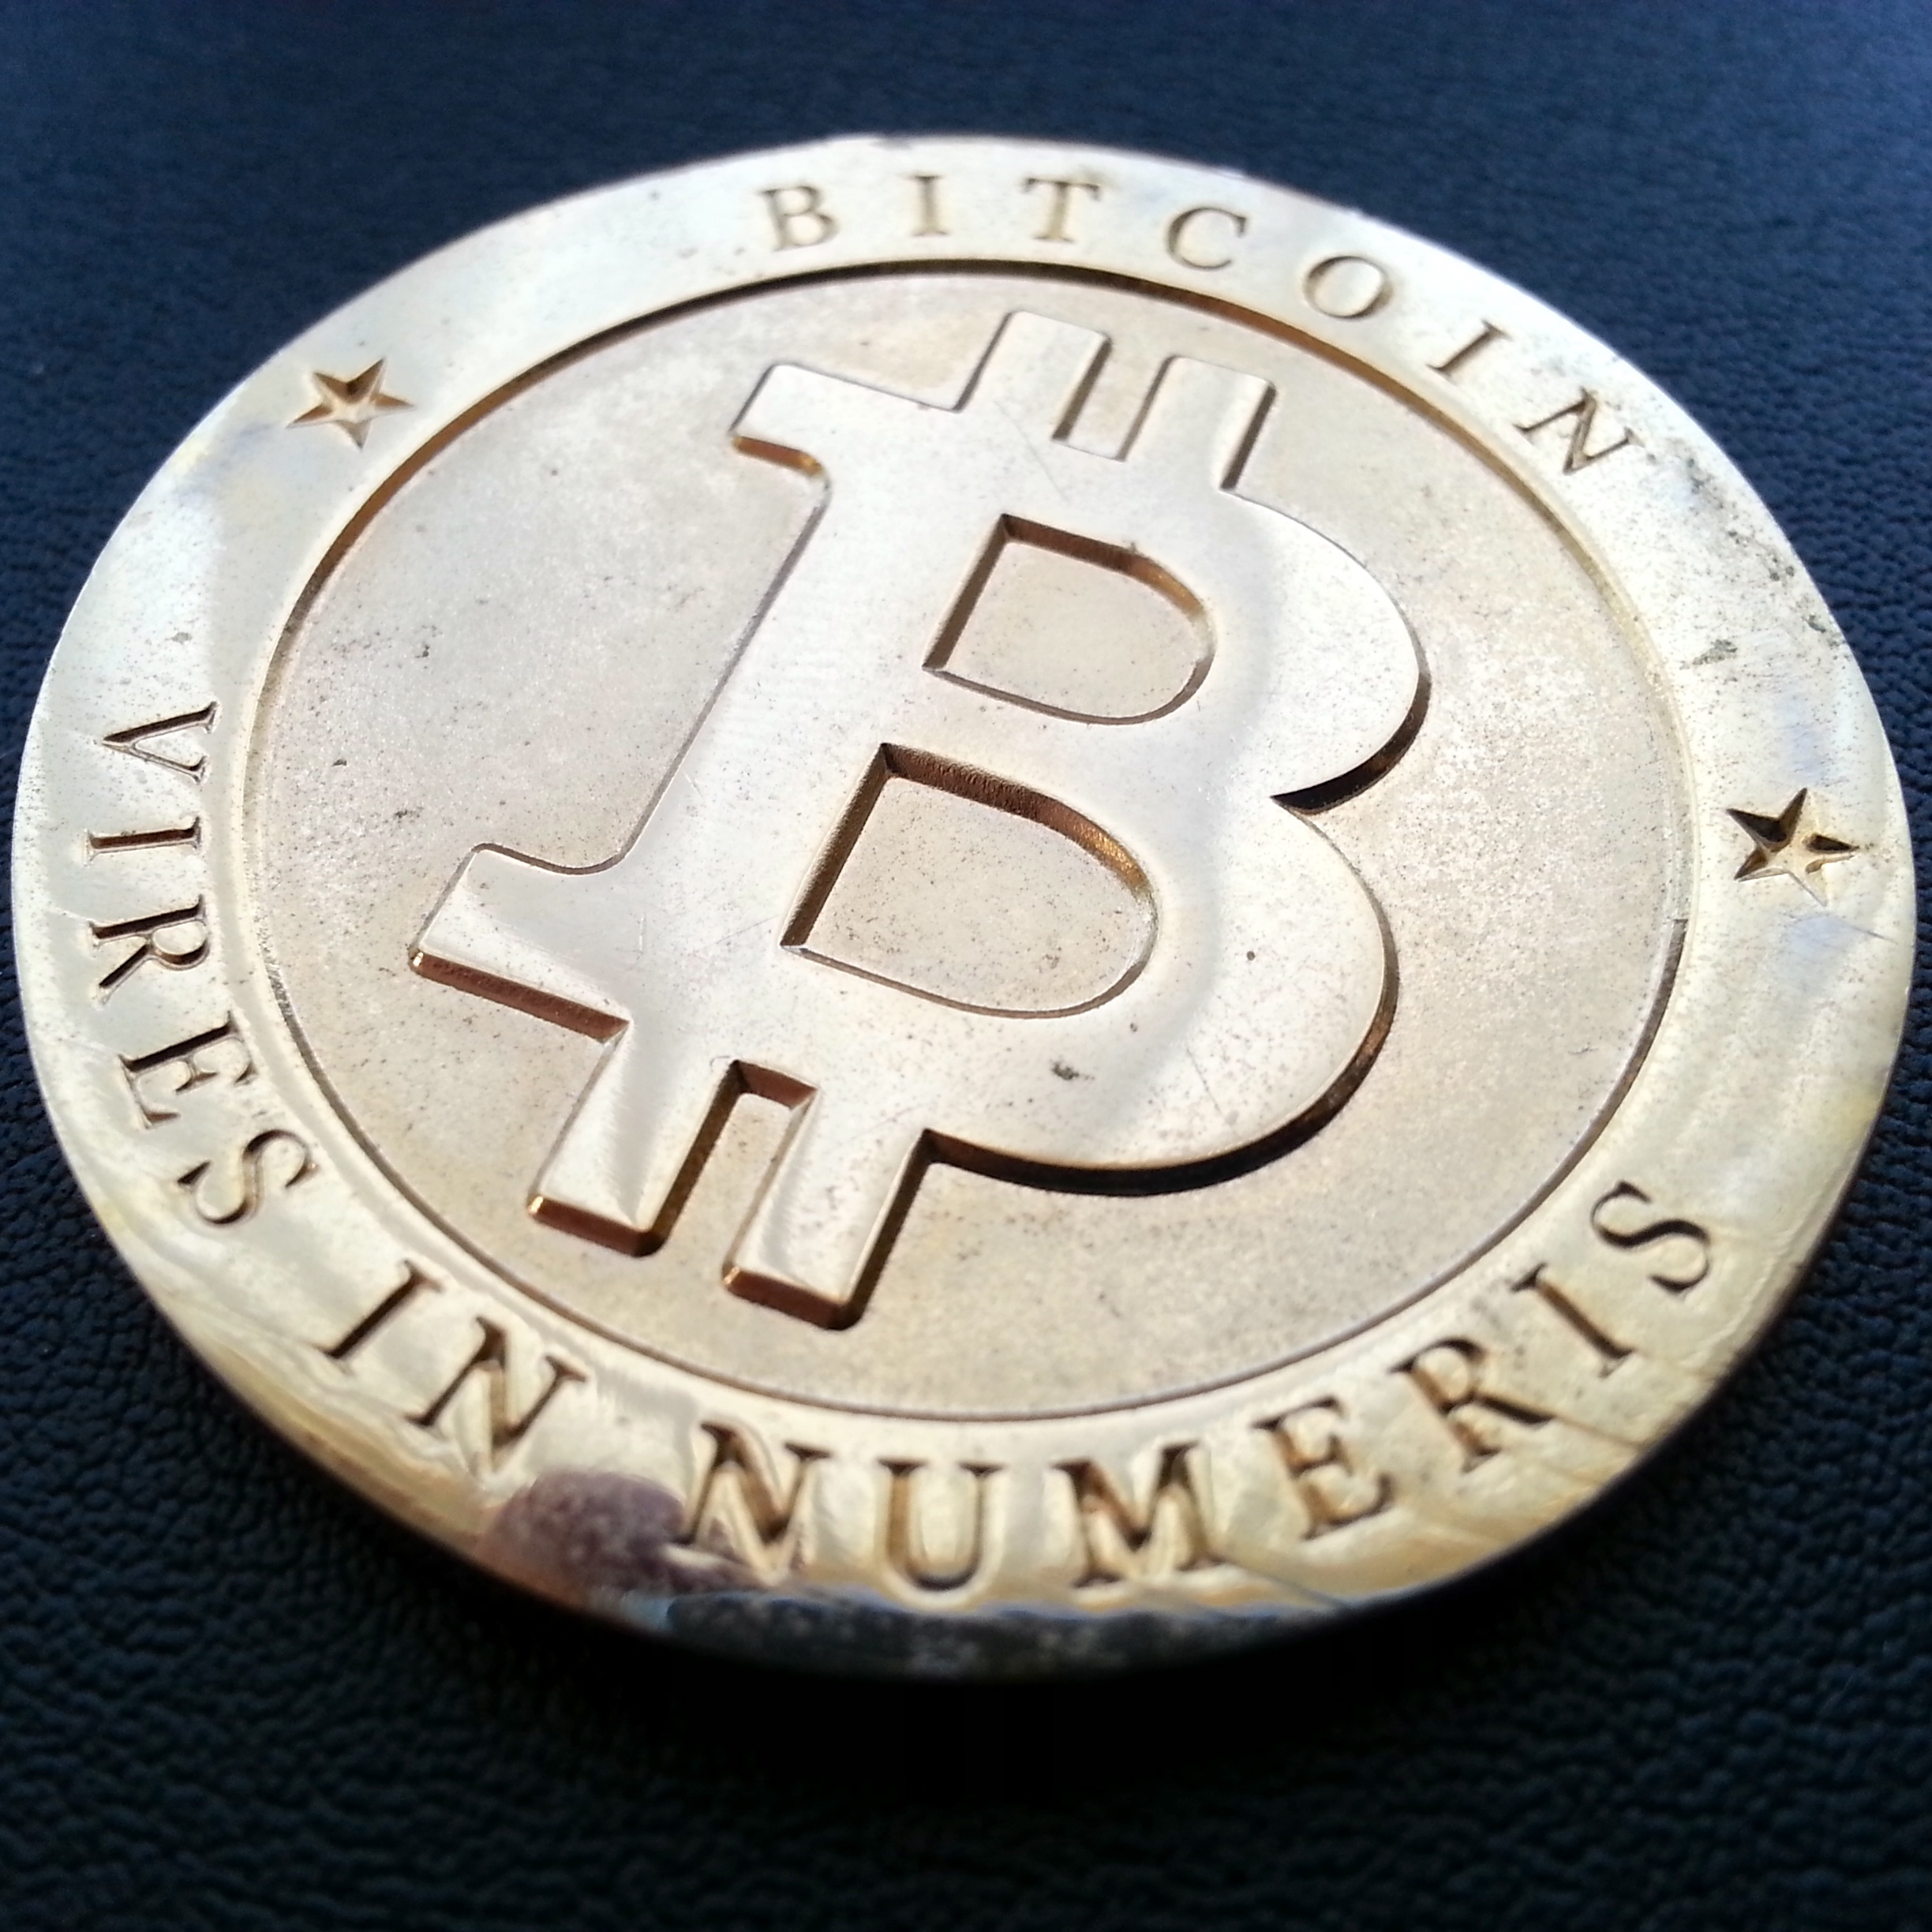 bitcoin trading germania acquistare bitcoin via paypal